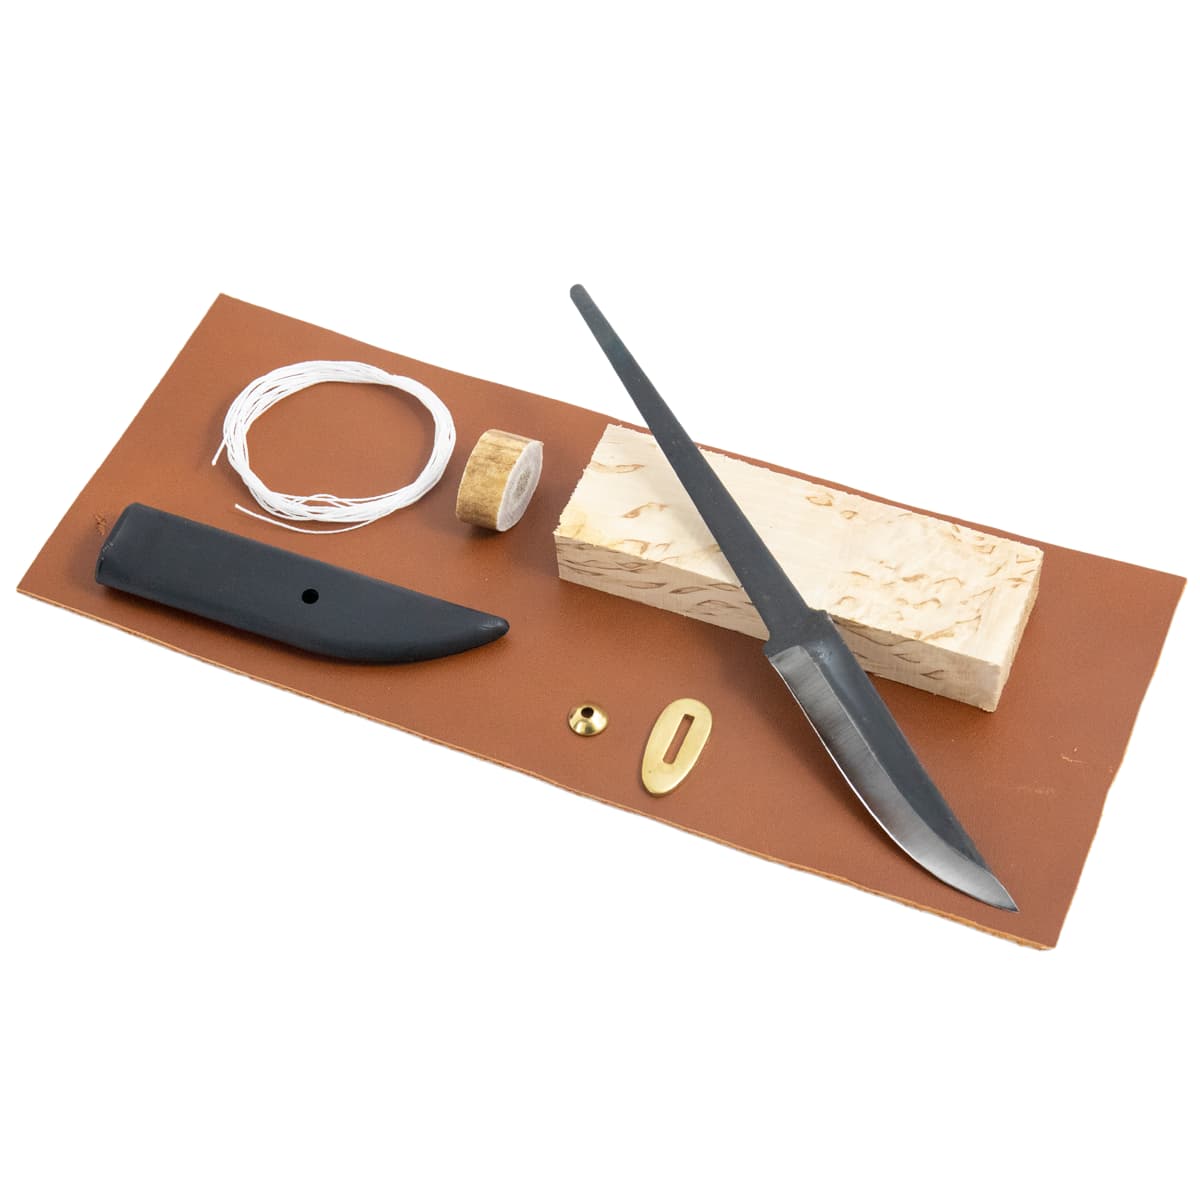 Casstrom Traditional Scandinavian Knife Making Kit